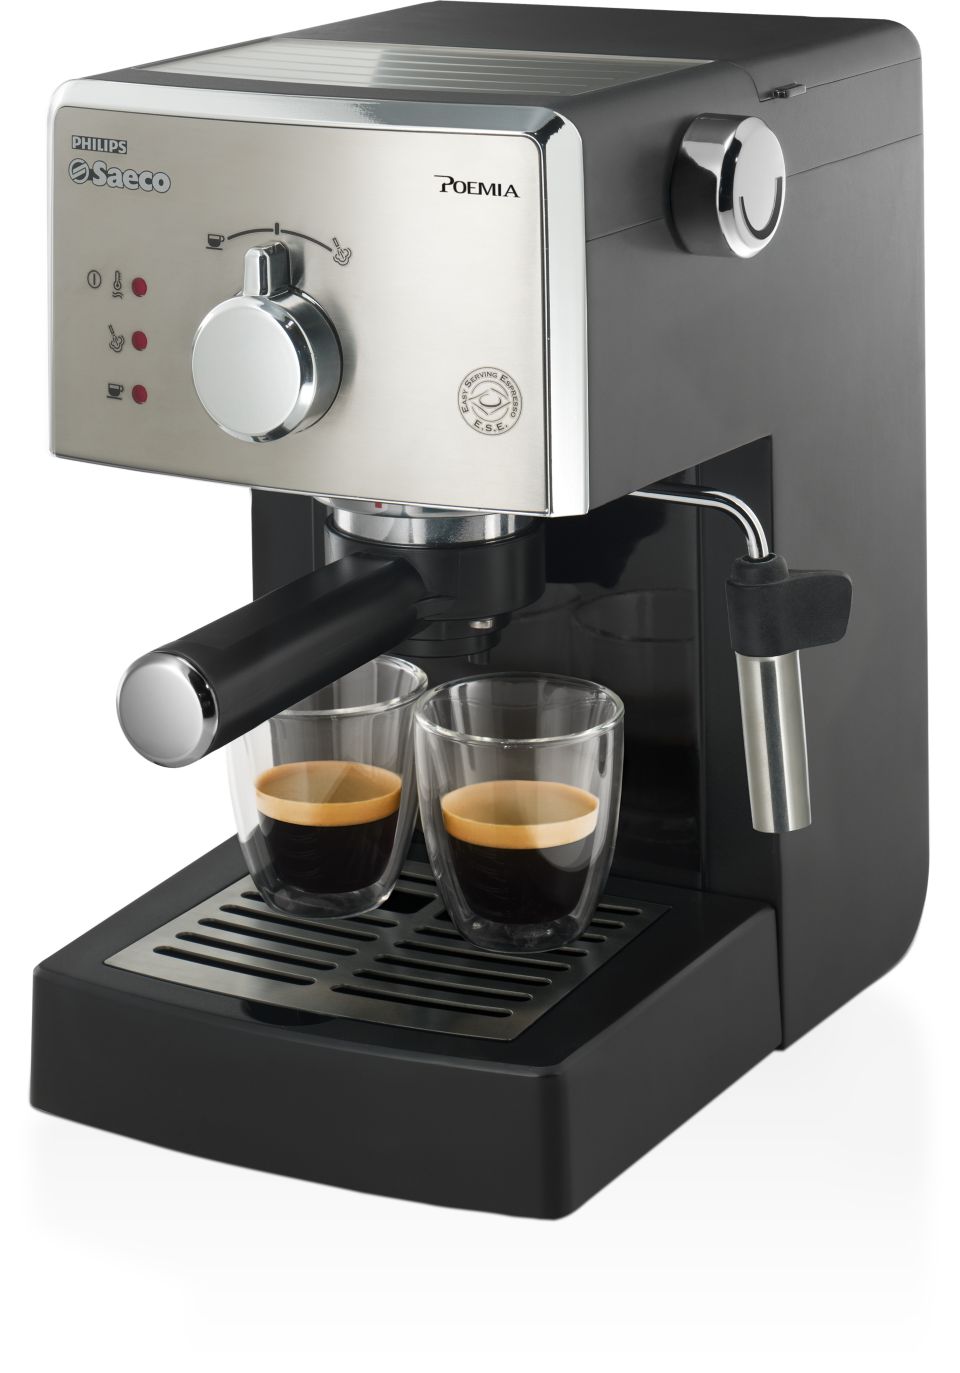 Toeval Overwegen Doorlaatbaarheid Poemia Manual Espresso machine HD8325/47 | Saeco